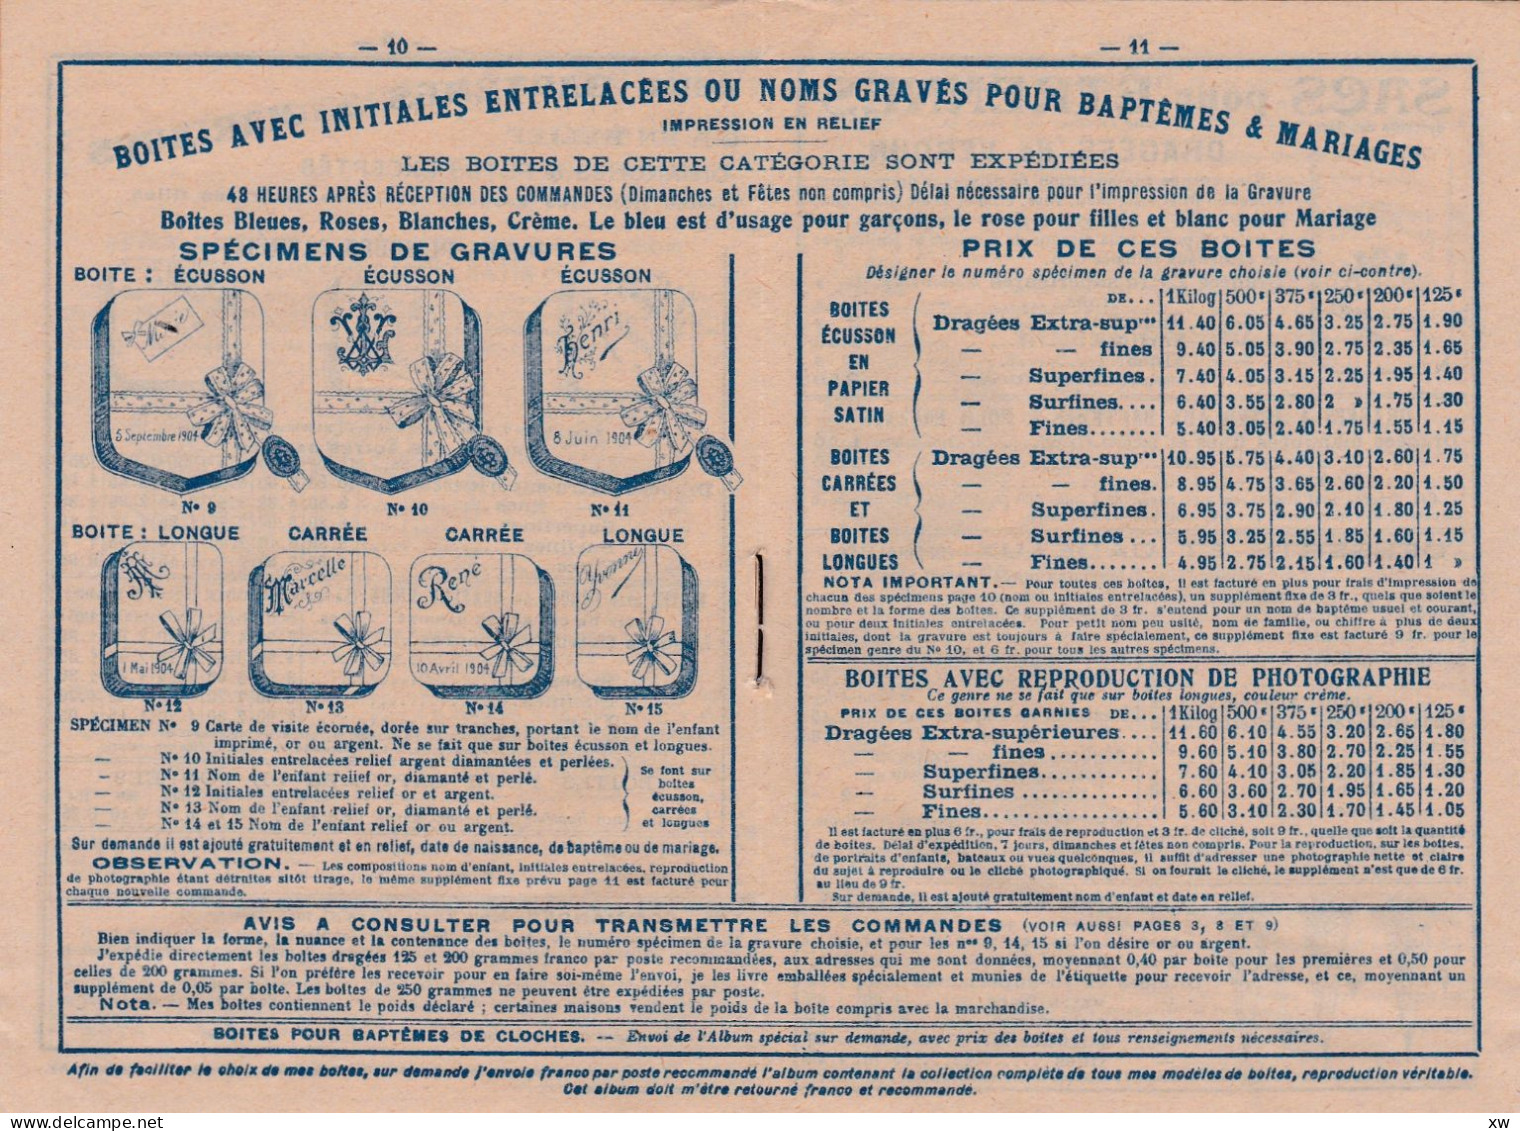 VERDUN-SUR-MEUSE-55-Livret publicitaire de 20 pages "Véritable Dragées de Verdun" L.Braquier- Etrennes 1905/06 -19-05-24